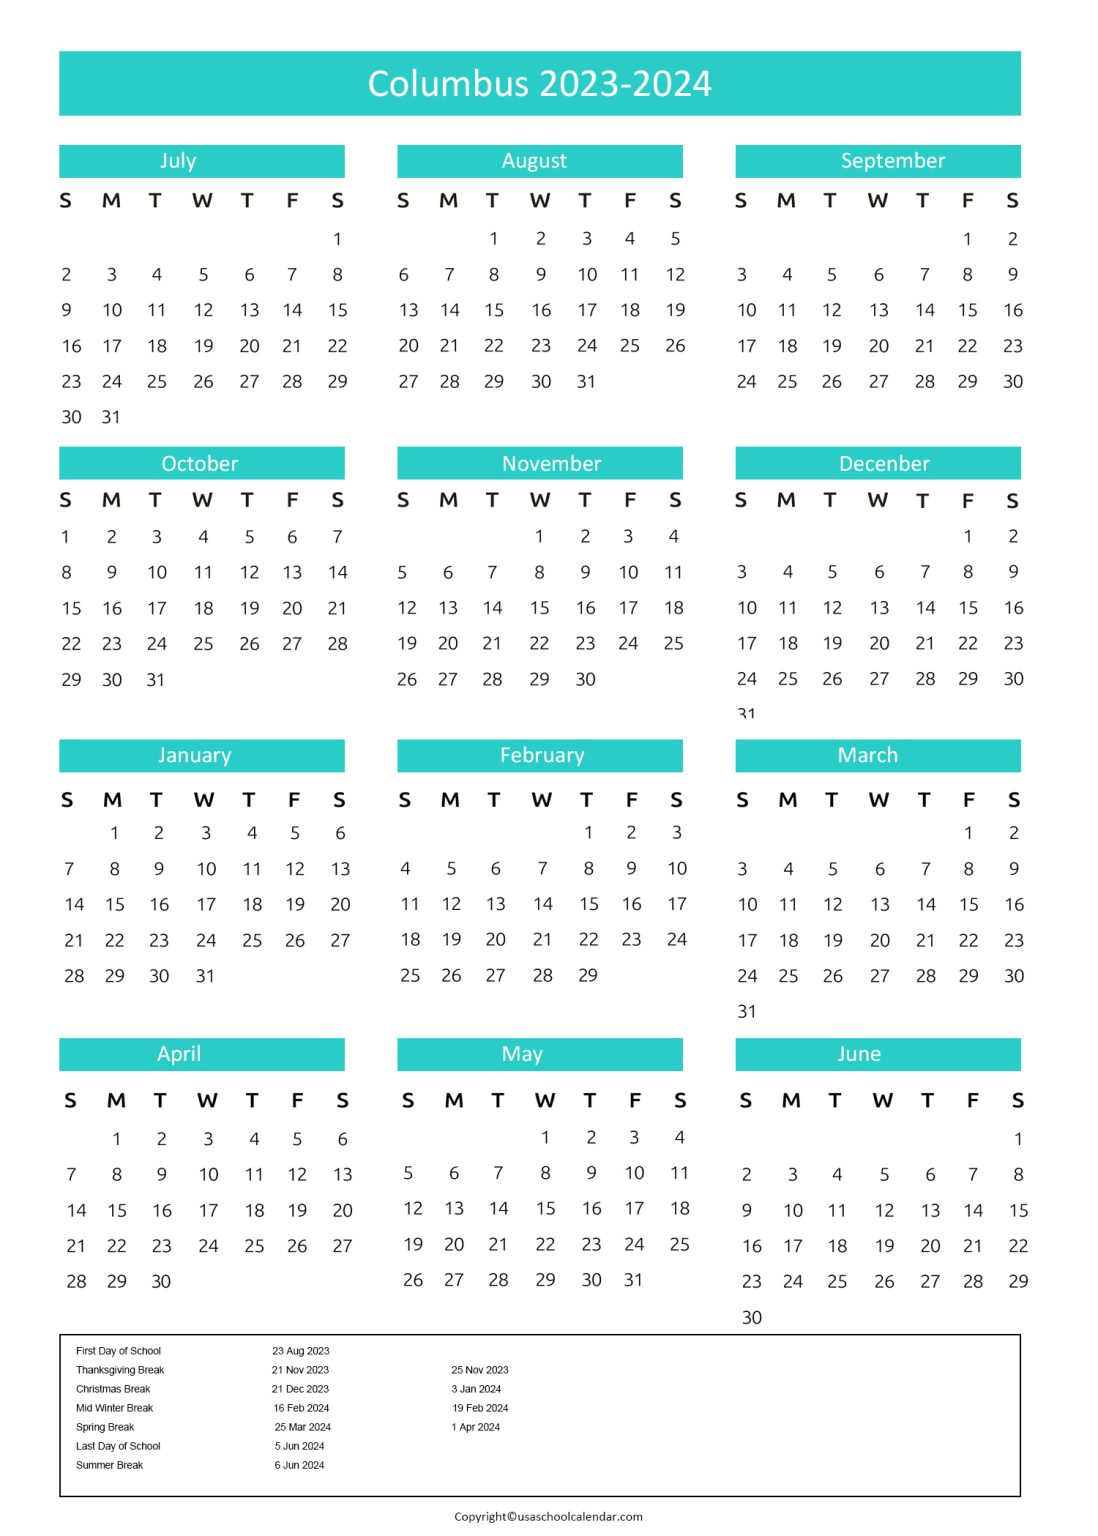 Columbus City Schools Calendar & Holidays 2023-2024 [CCS]